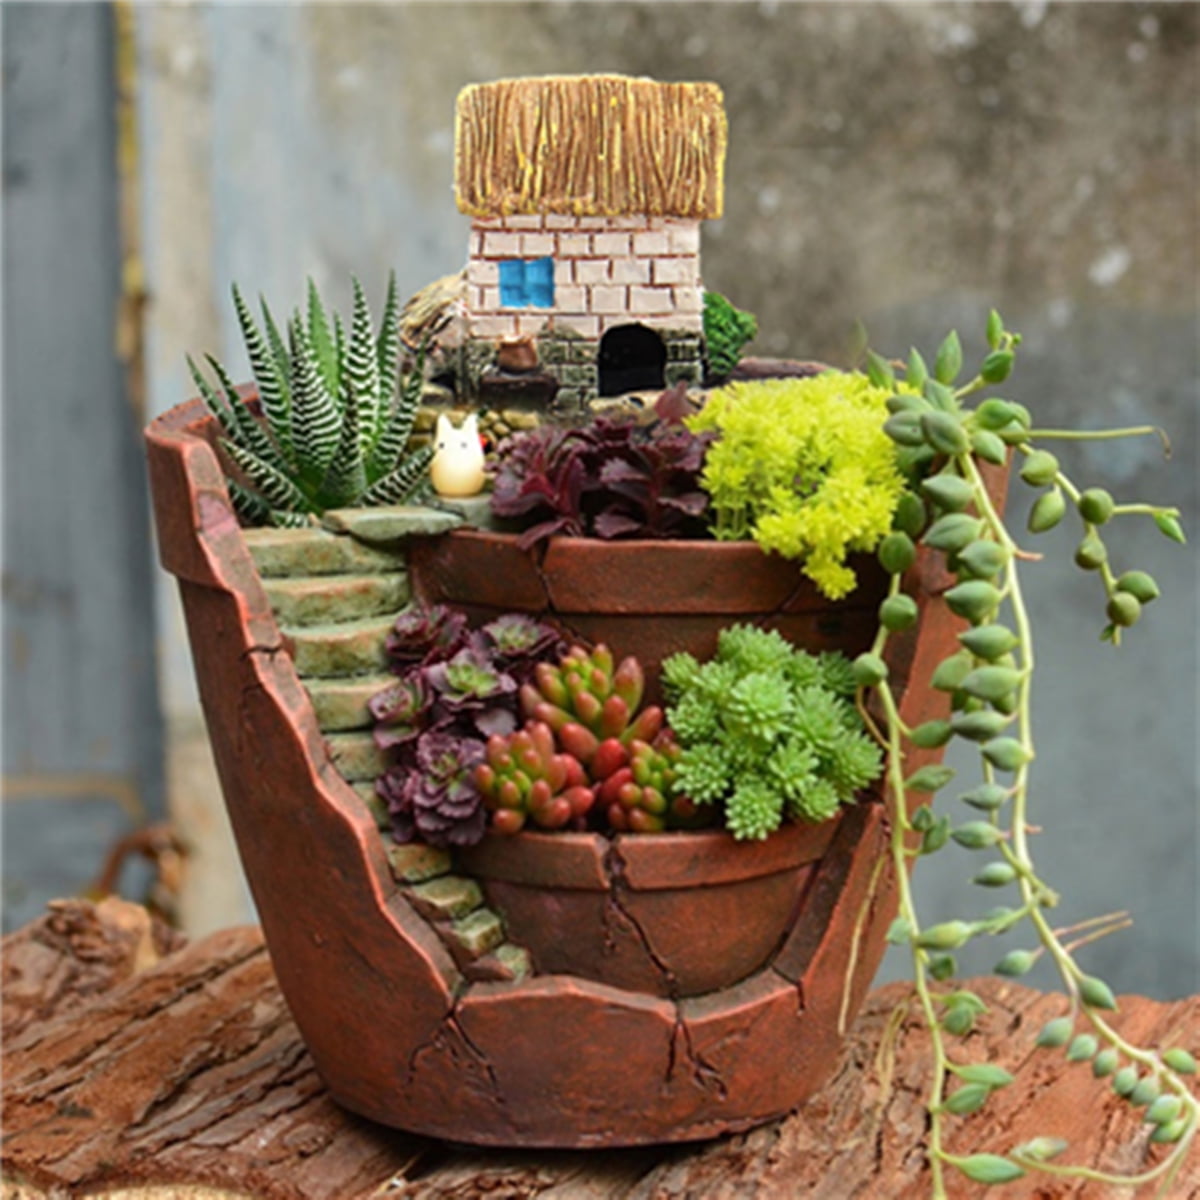 24pcs Small Ceramic Succulent Plant Pot Flower Planter Garden Shop Decor Mini 